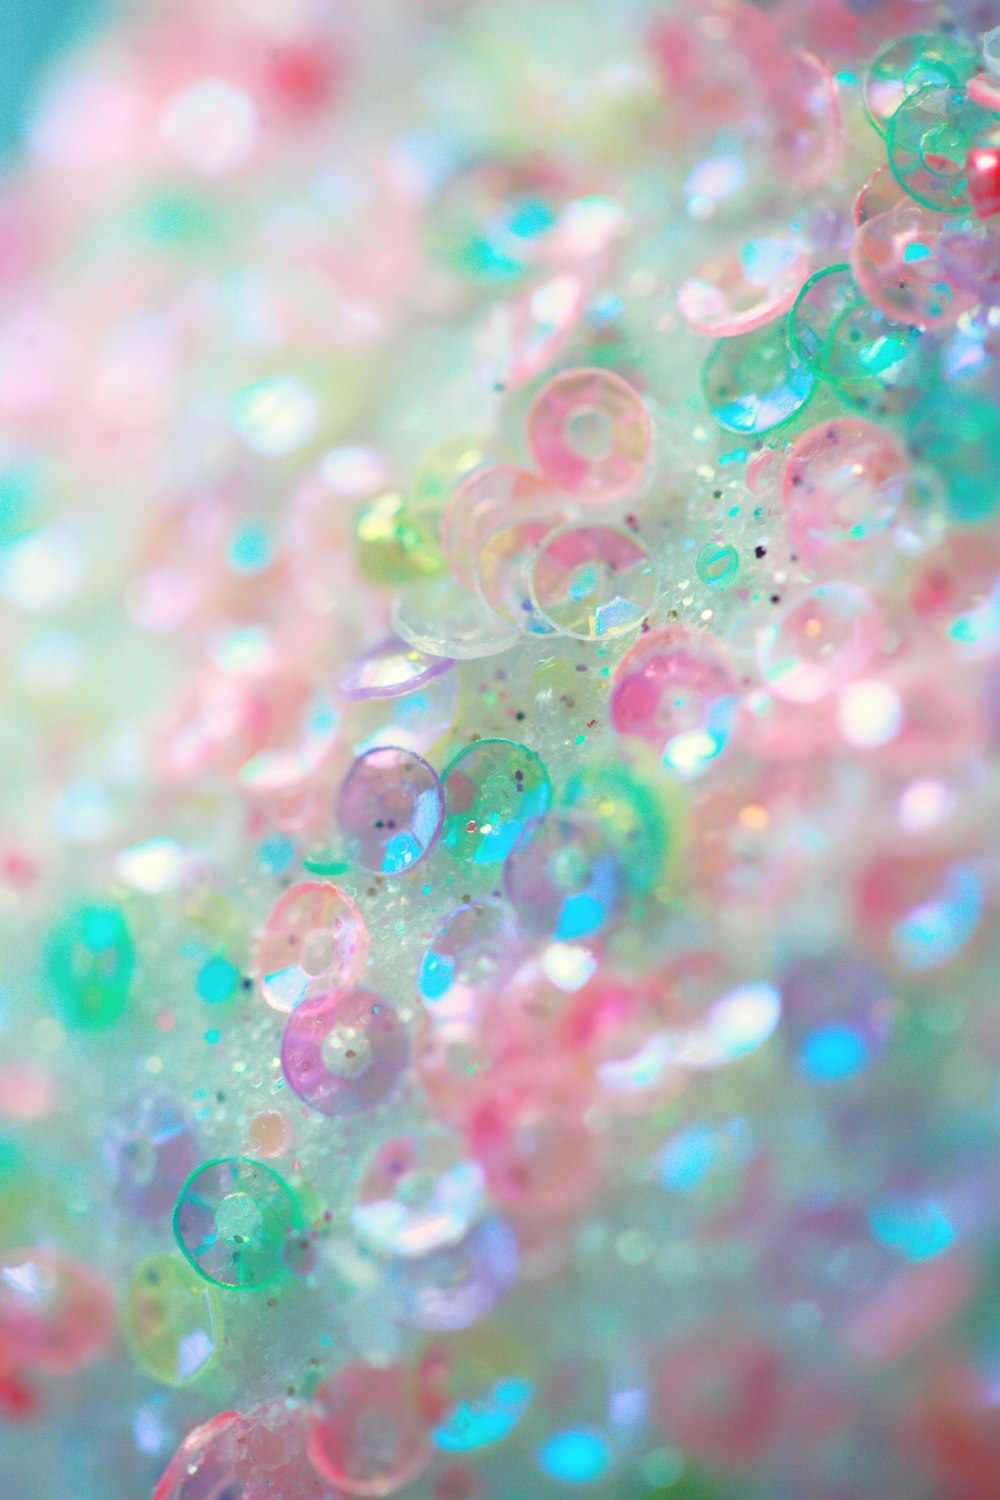 Burbujas rosas, verdes y azules